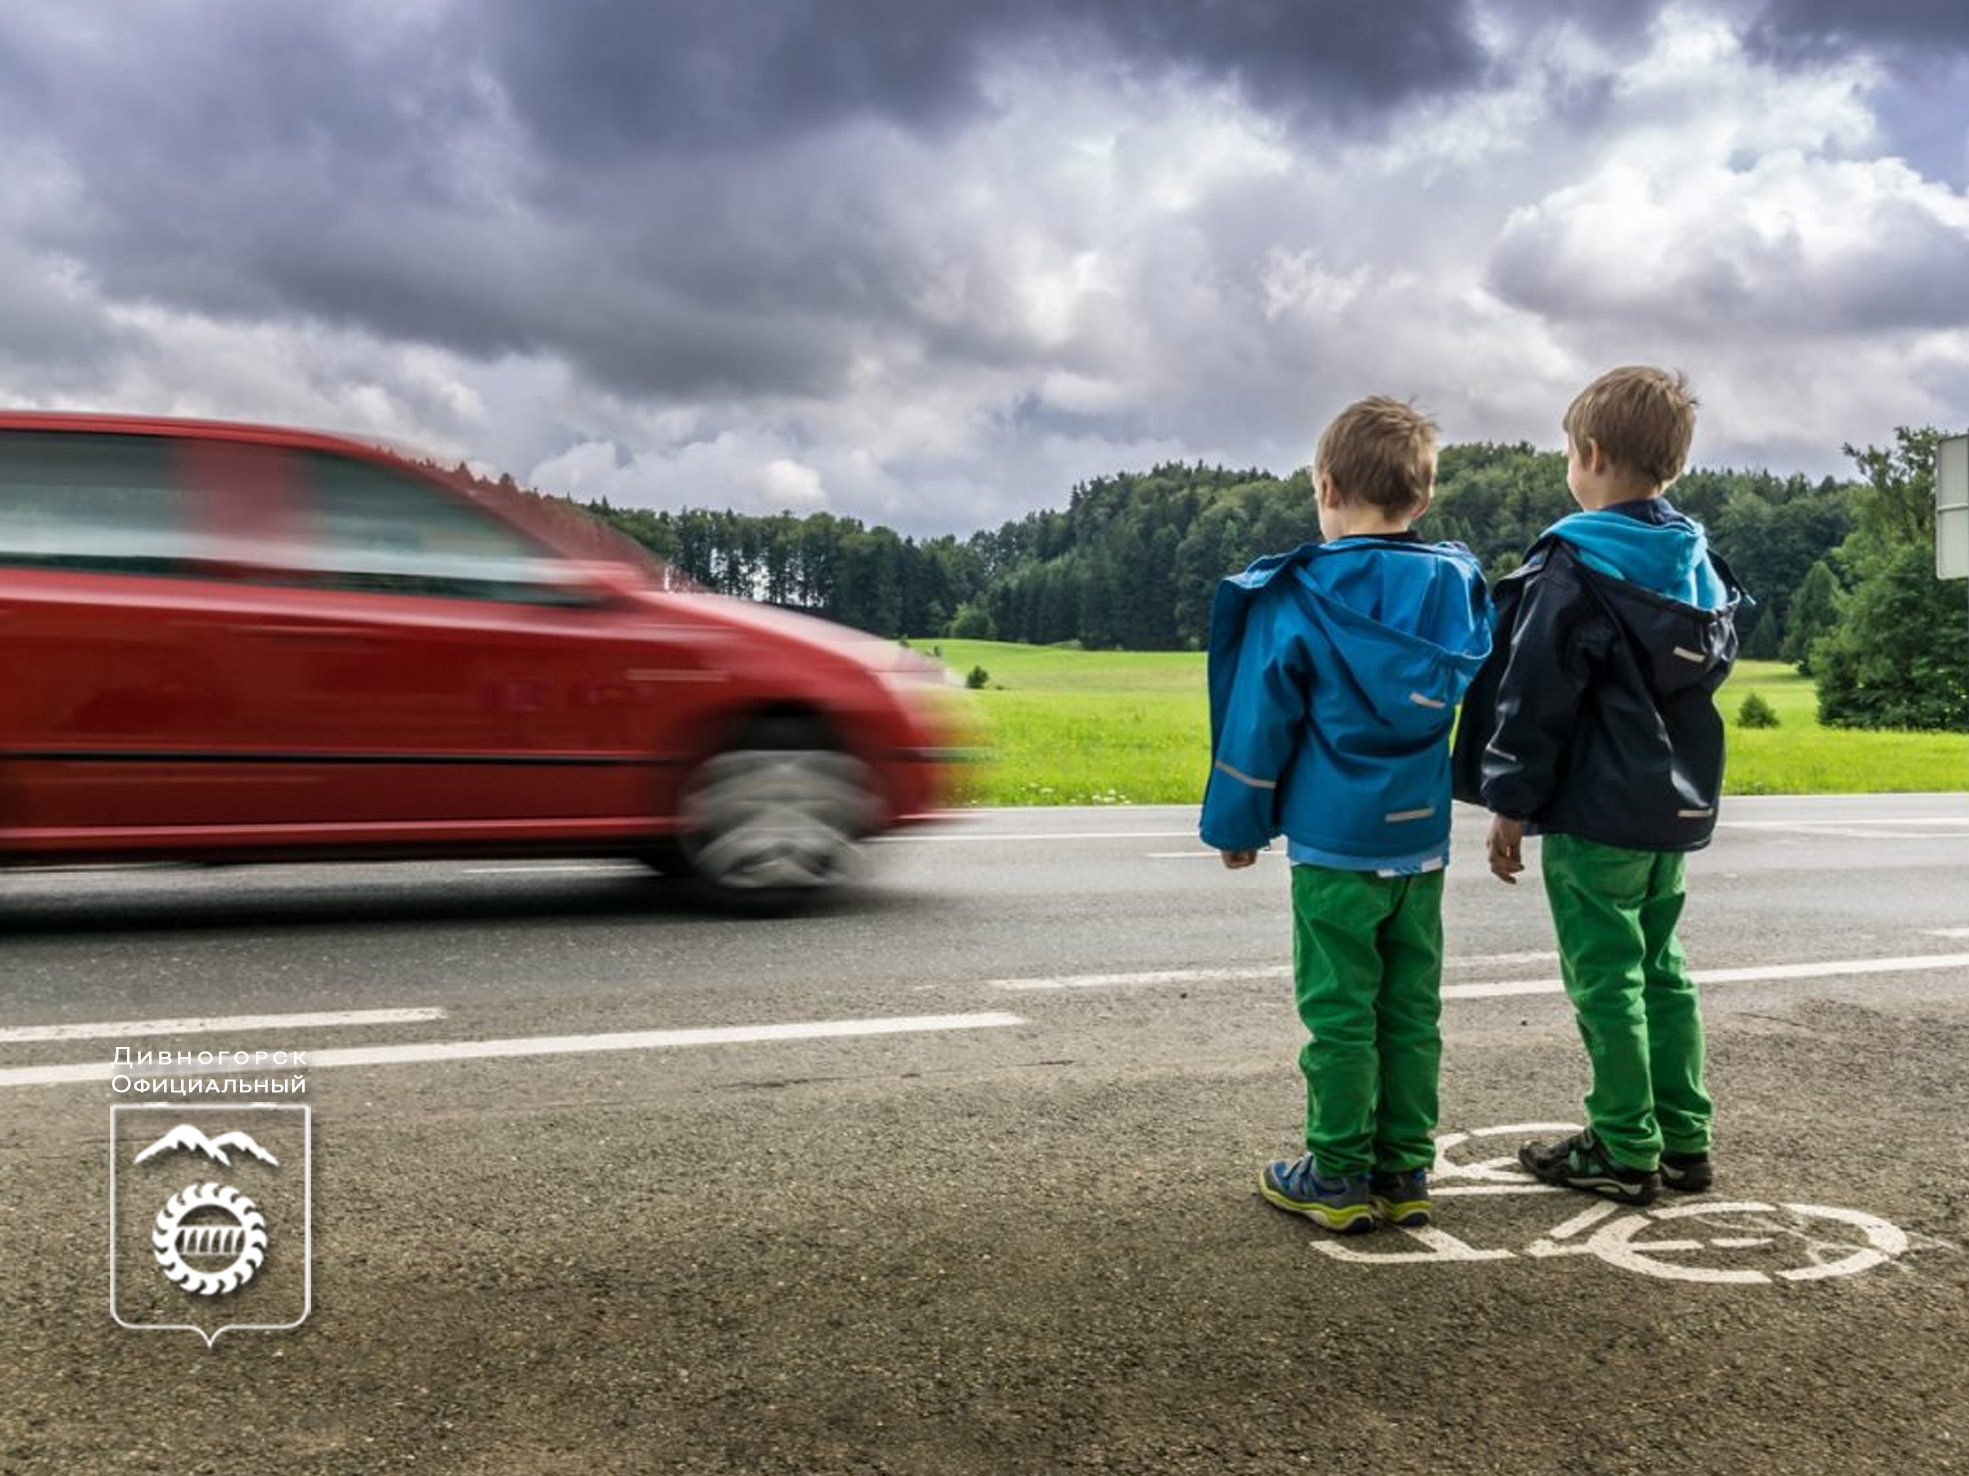 Дети играющие на дороге. Дети на дороге. Безопасность на дороге для детей. Дороги для детей. Детский травматизм на дорогах.